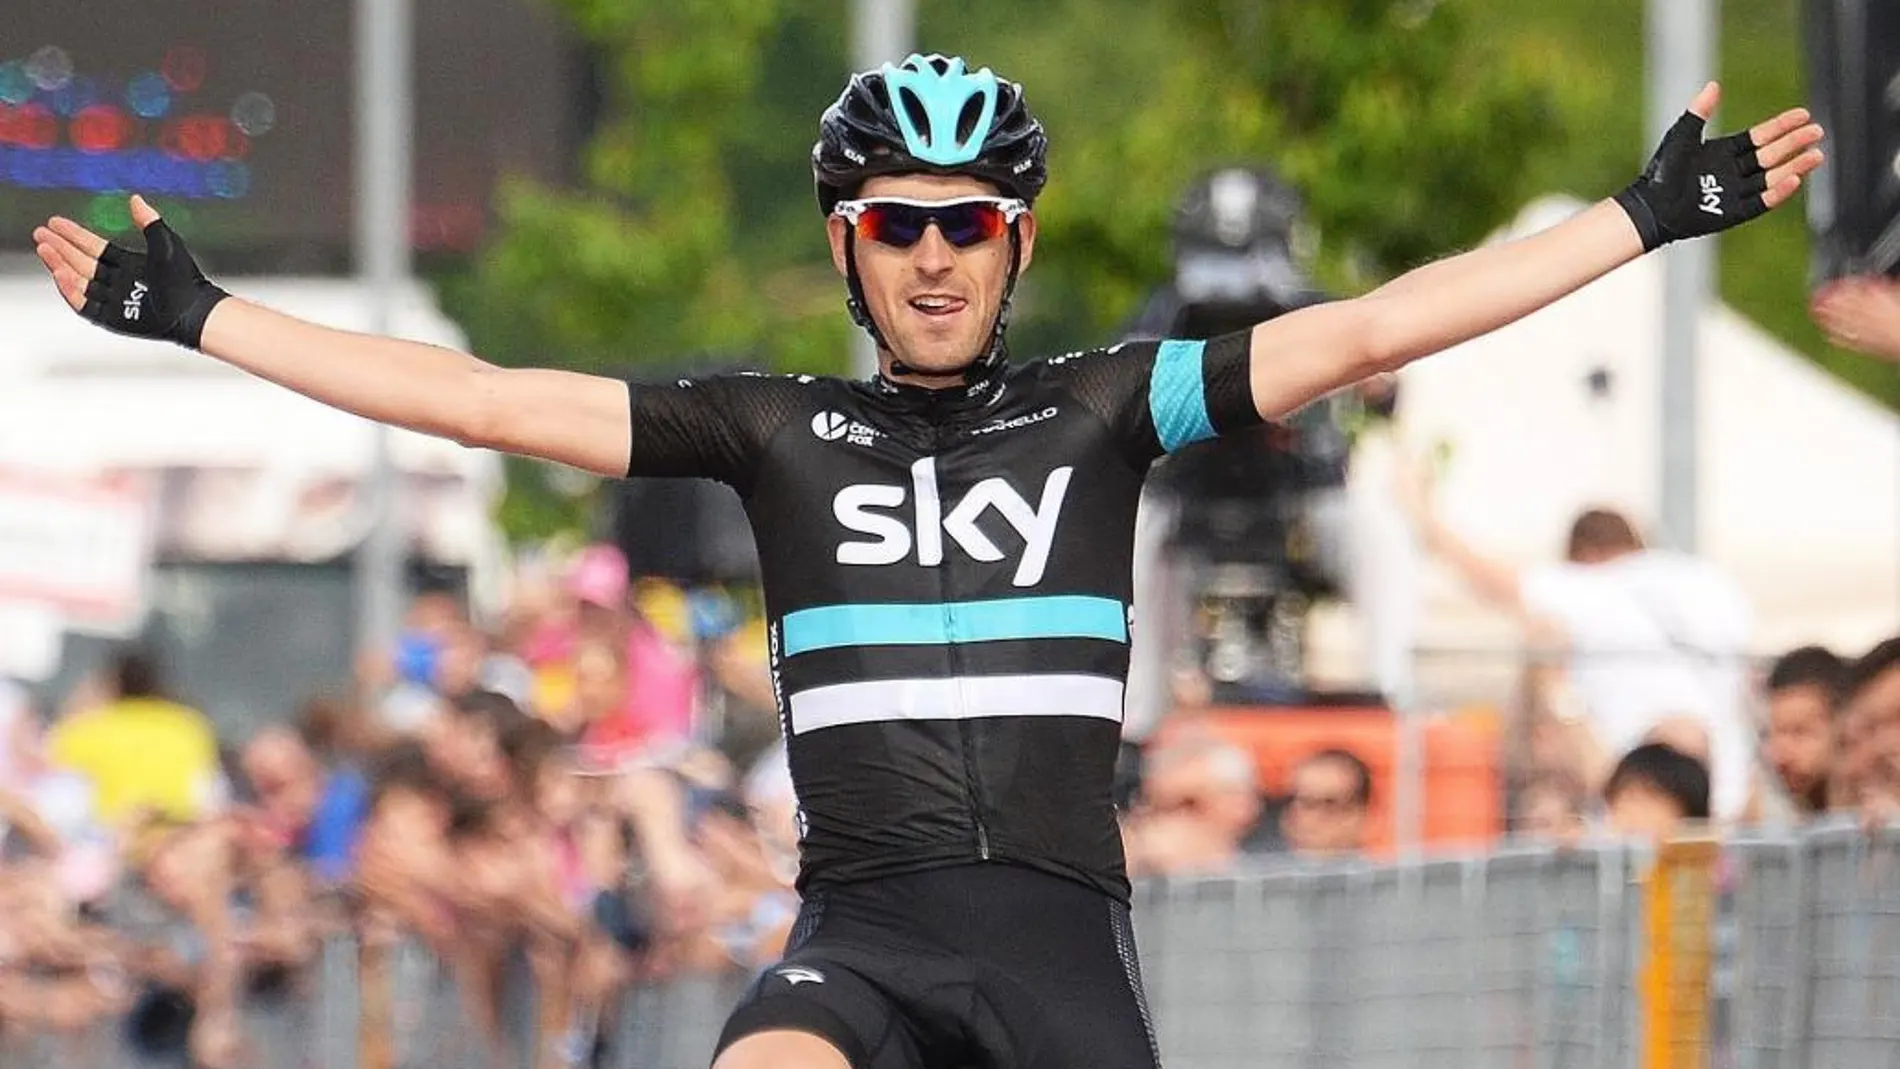 El ciclista español Mikel Nieve, del equipo Sky, cruza la meta para ganar la 13ª etapa del Giro de Italia